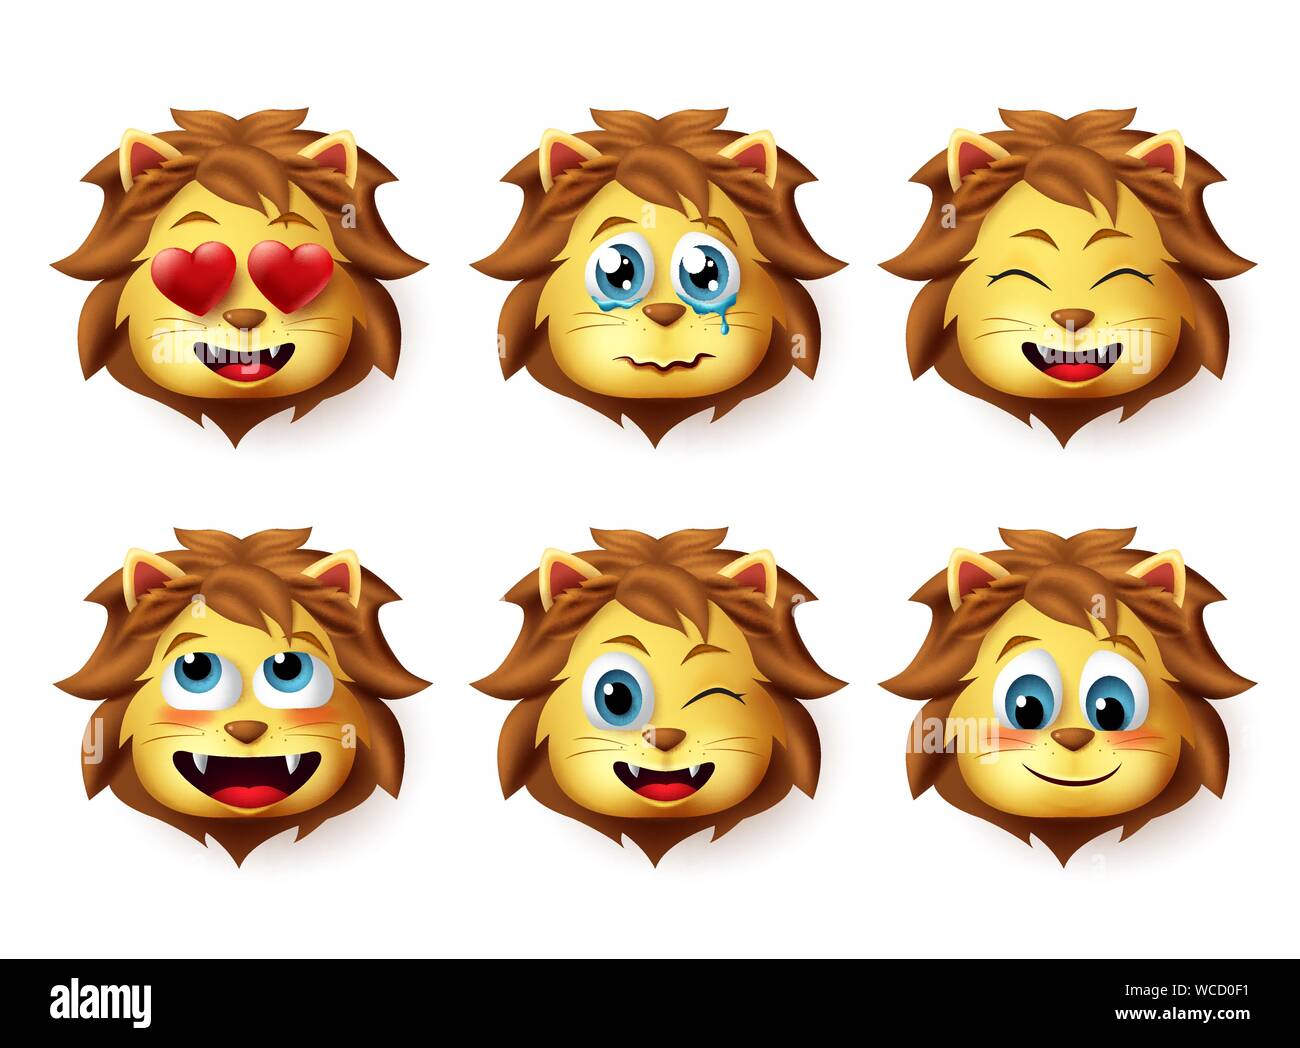 León emoji vector animal. Emoticones de leones con divertidas y inlove expresiones faciales para diseñar elementos aislados en fondo blanco. Ilustración del Vector